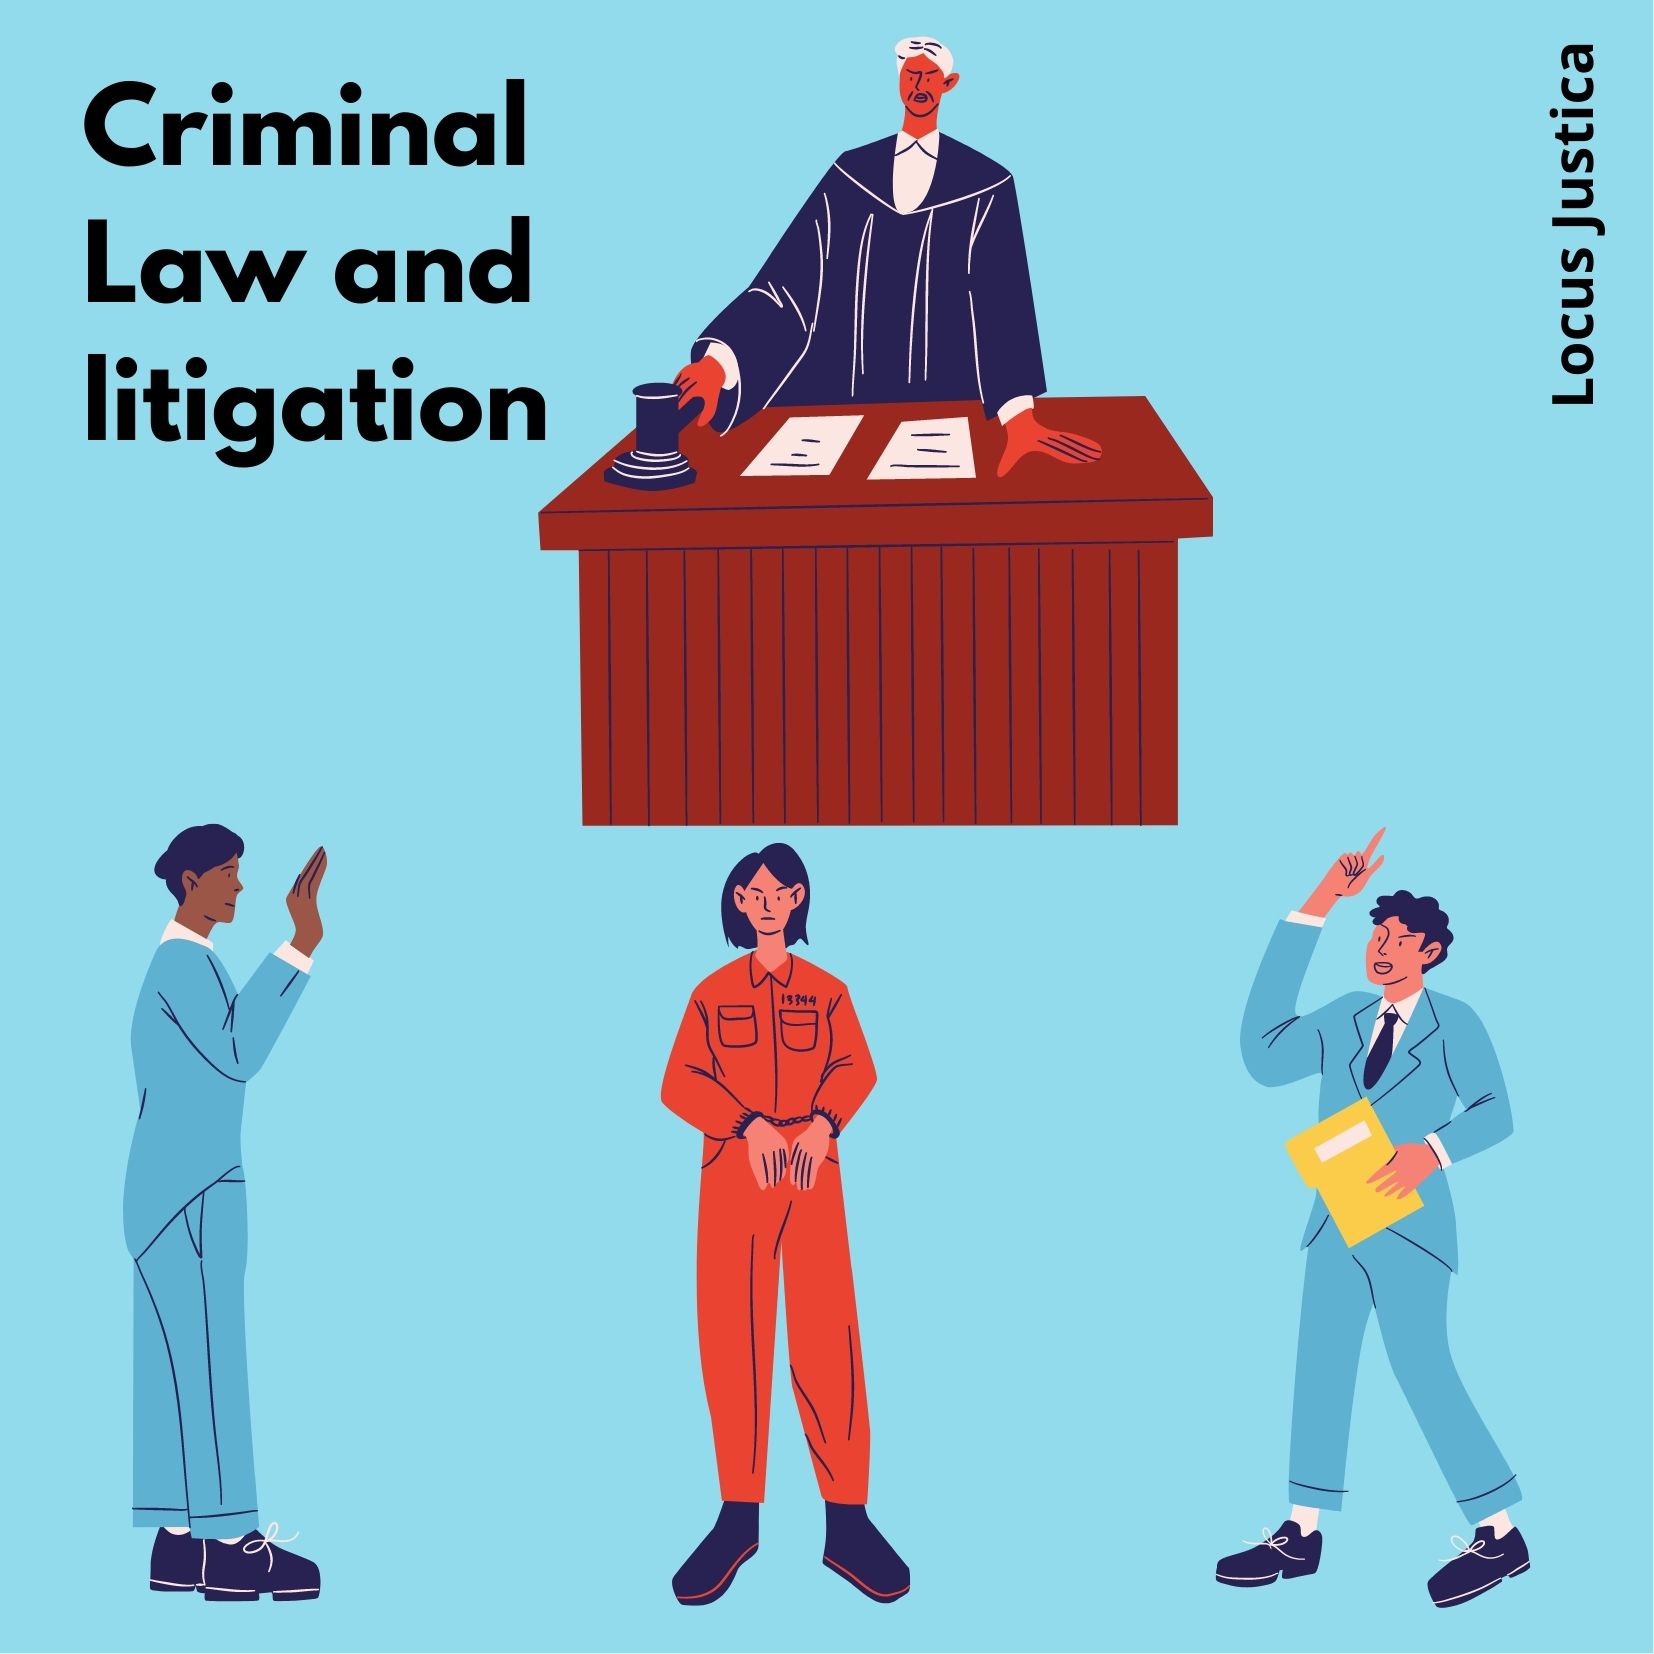 Criminal law and litigation